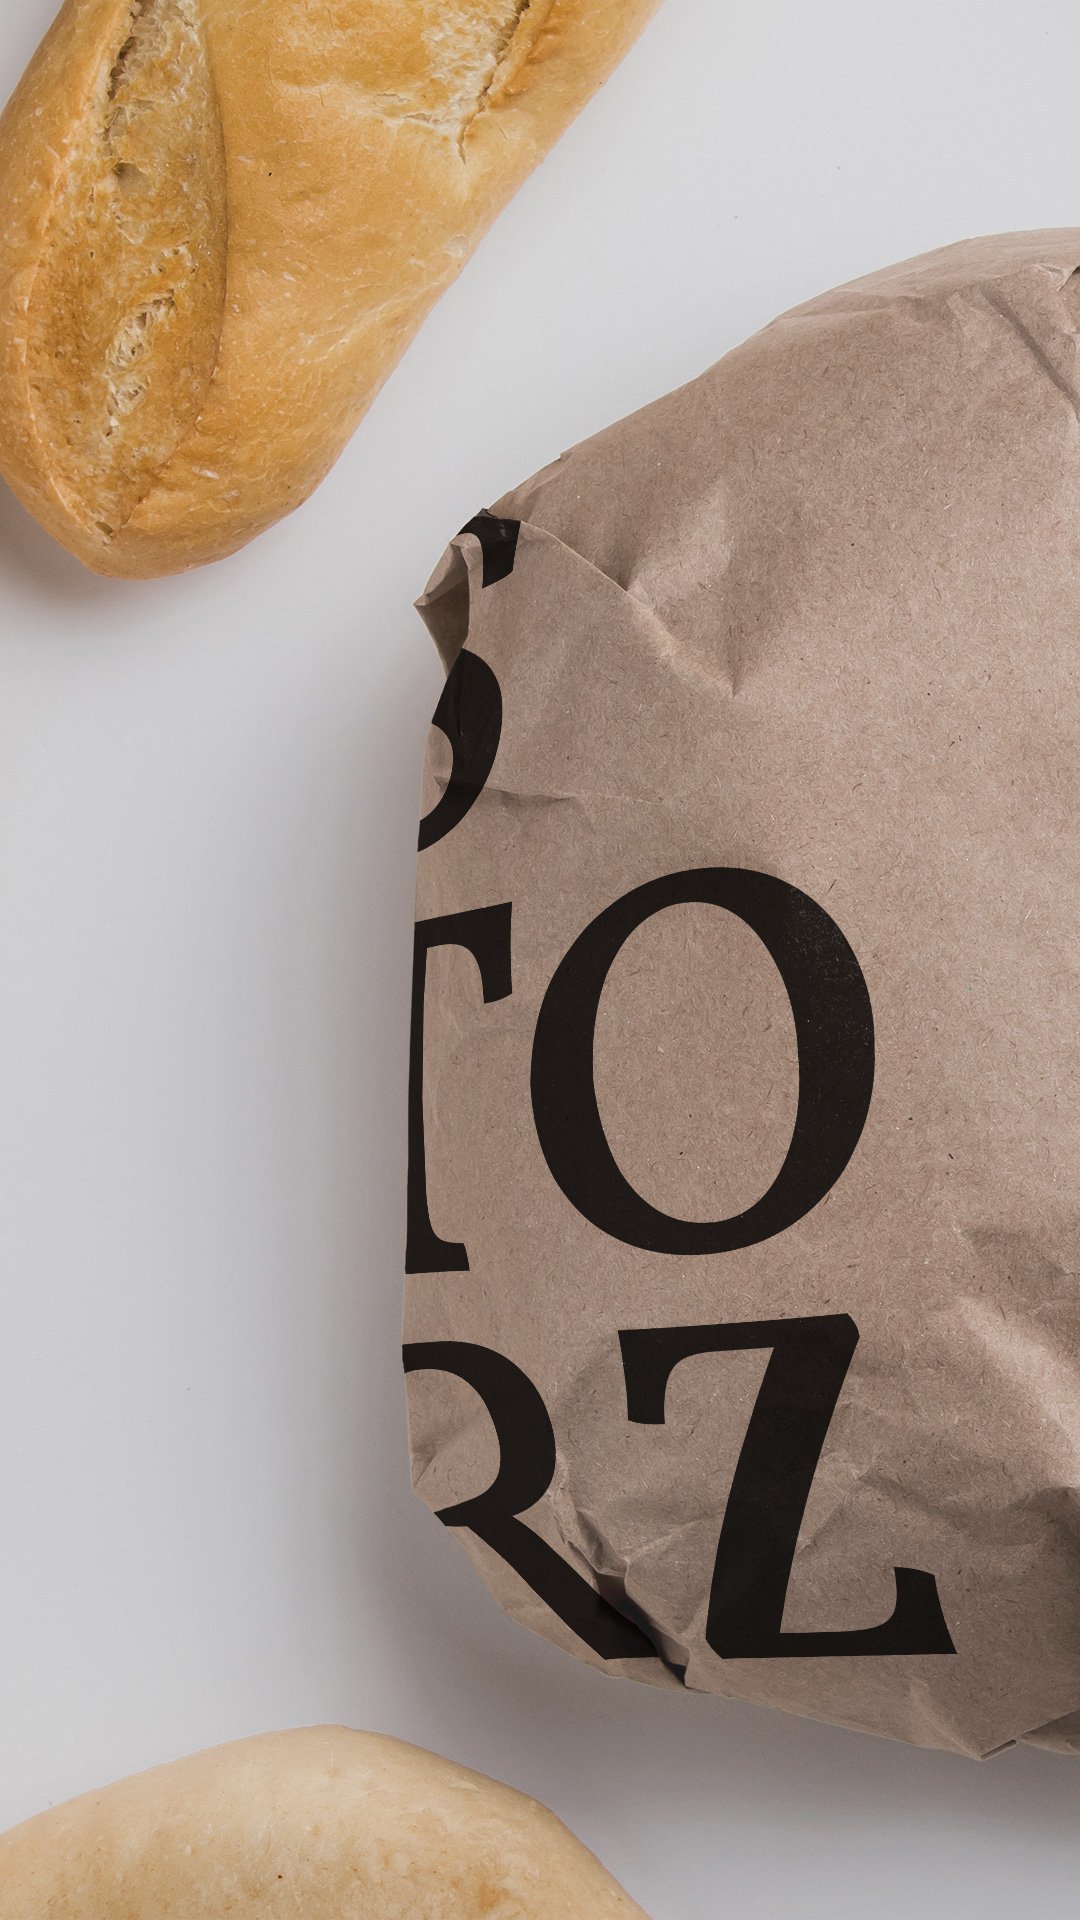 Ein Brot eingepackt in ein Brotpapier mit Storz-Aufdruck 